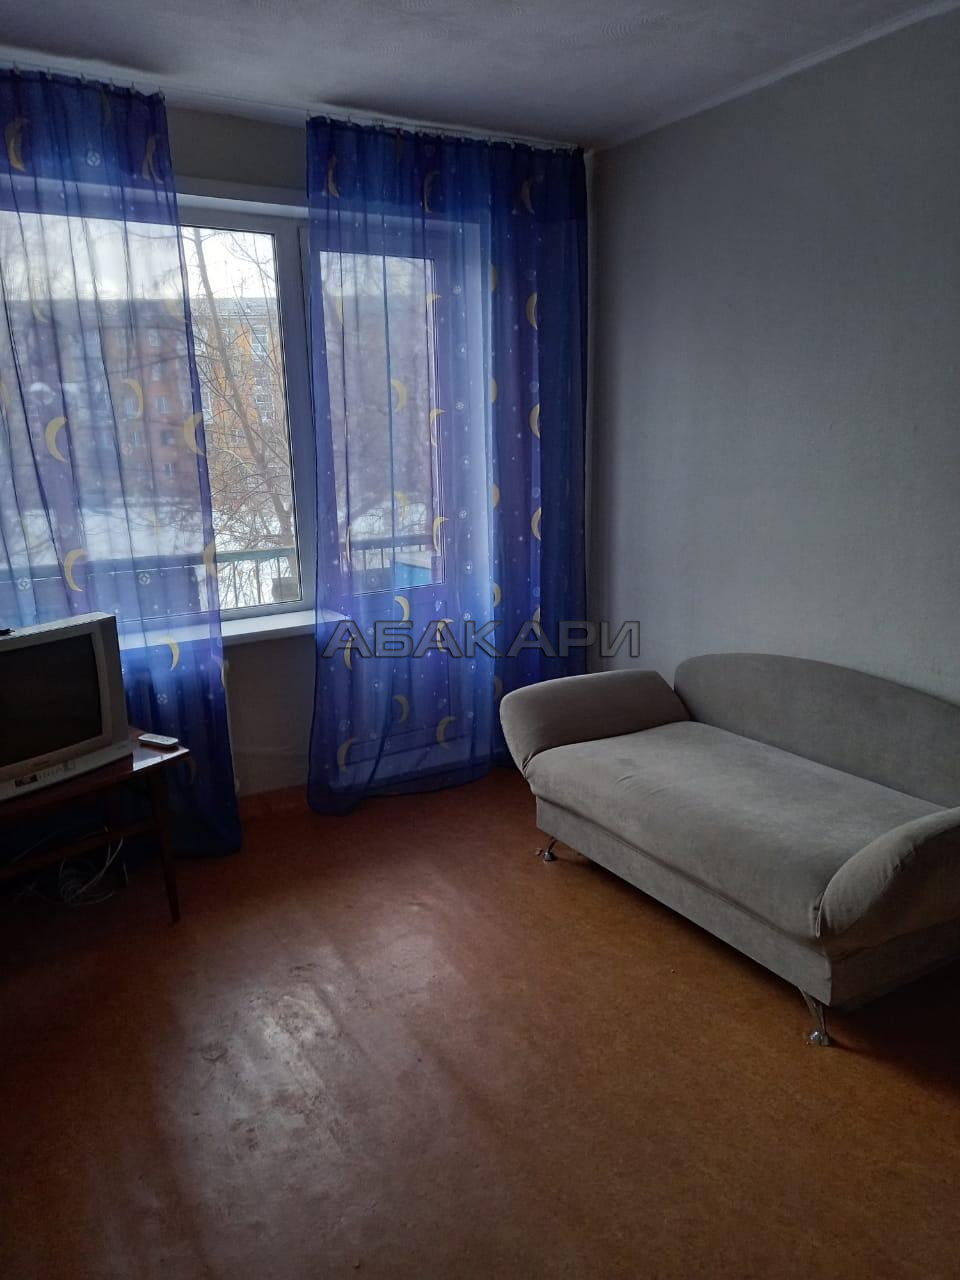 1-комнатная улица Щербакова, 16  за 13000 руб/мес фото 1